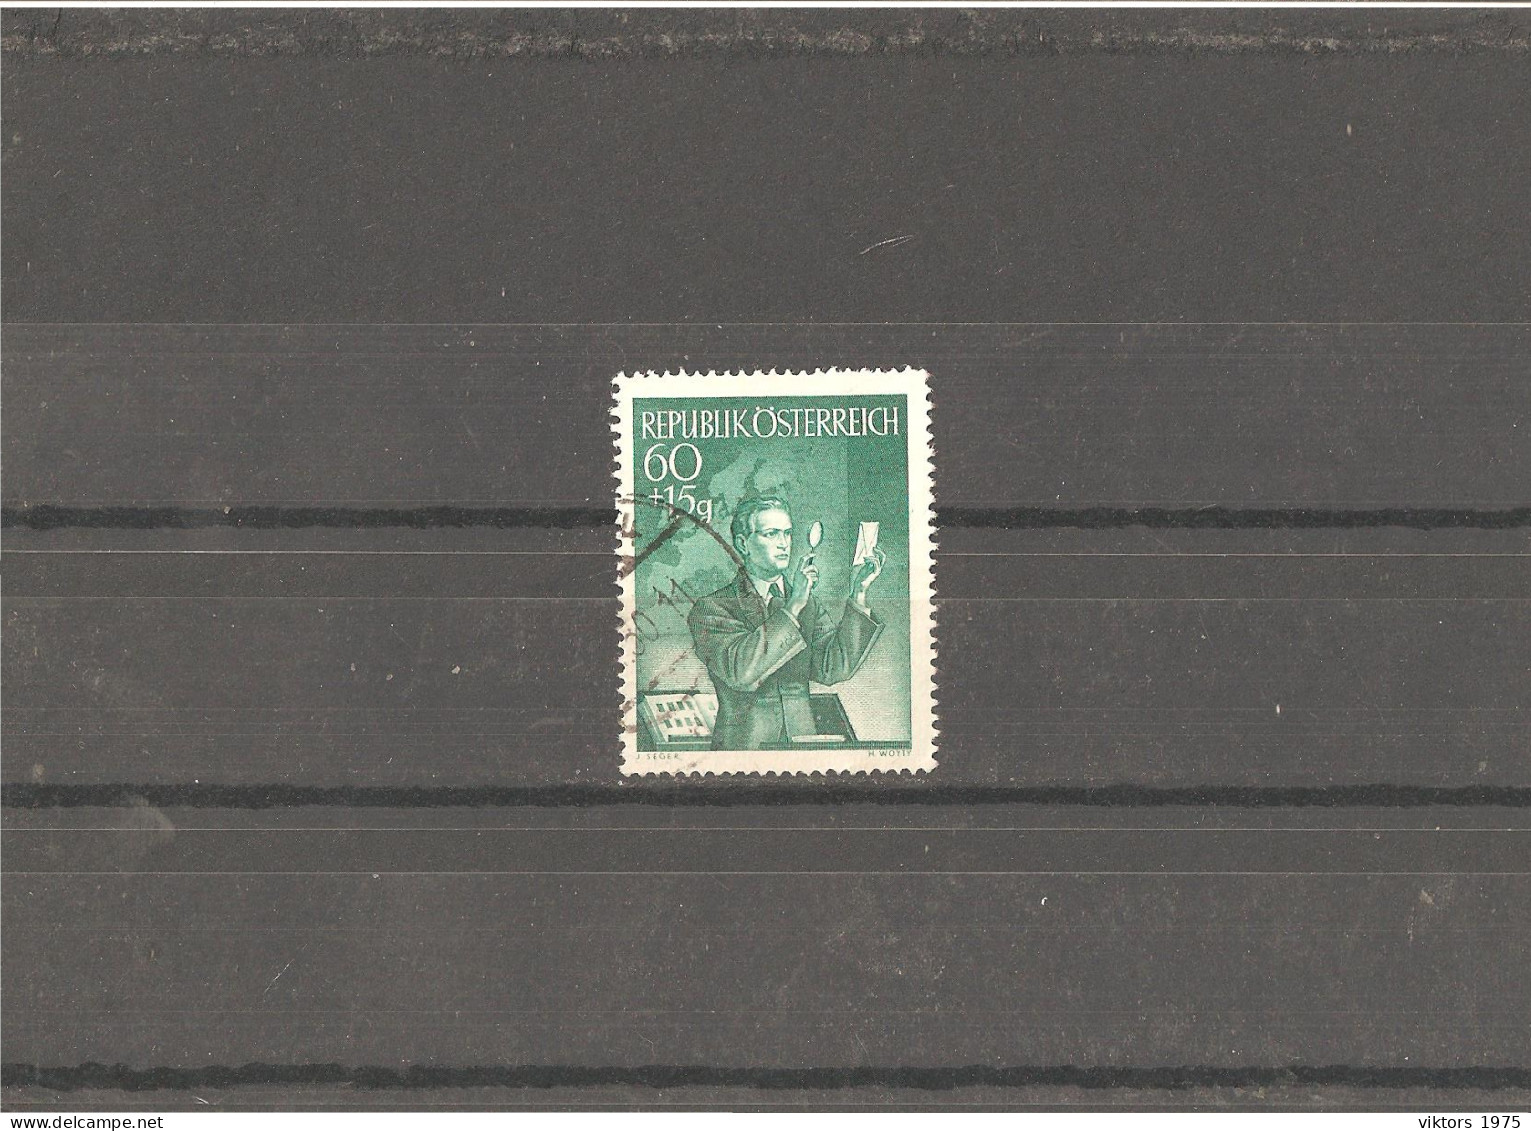 Used Stamp Nr.957 In MICHEL Catalog - Usati